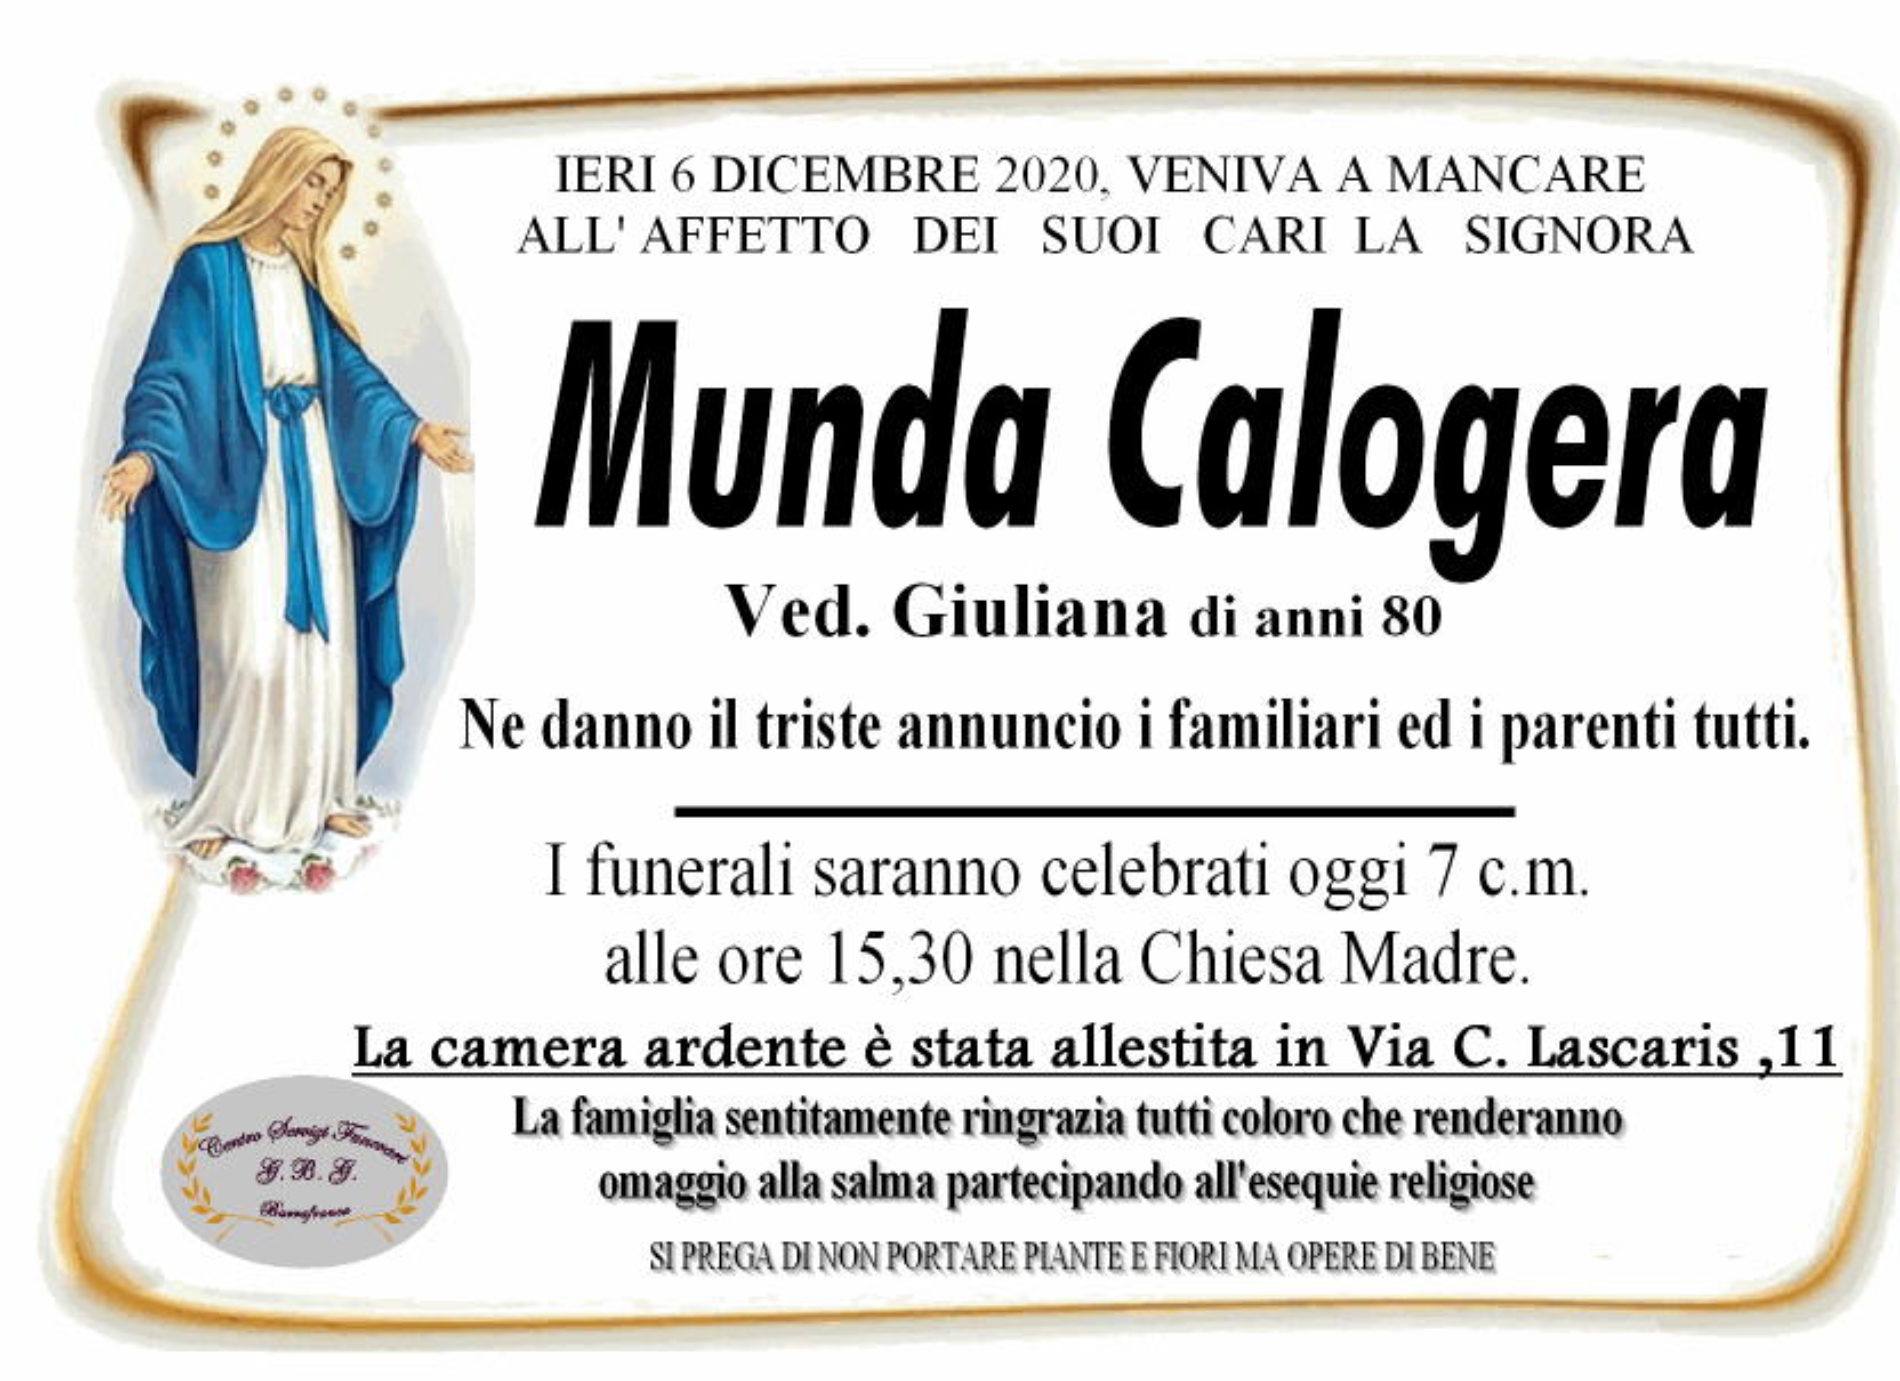 Annuncio servizi funerari agenzia G.B.G. sig.ra Munda Calogera ved. Giuliana di anni 80